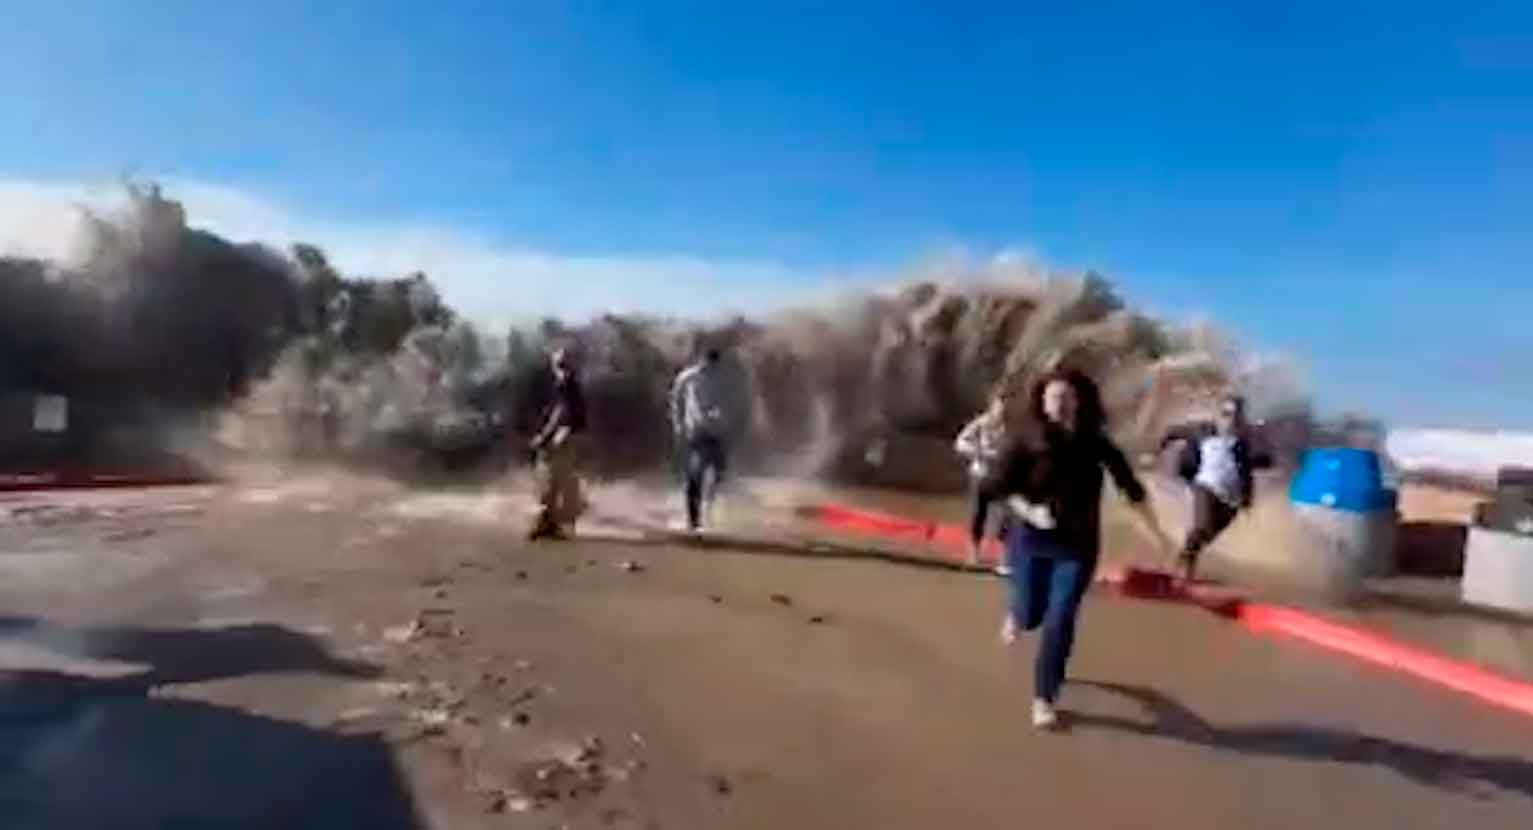 Vídeo mostra o momento em que uma onda gigante ultrapassa um paredão e fere oito pessoas. Fotos e vídeos: Reprodução Twitter @Top_Disaster